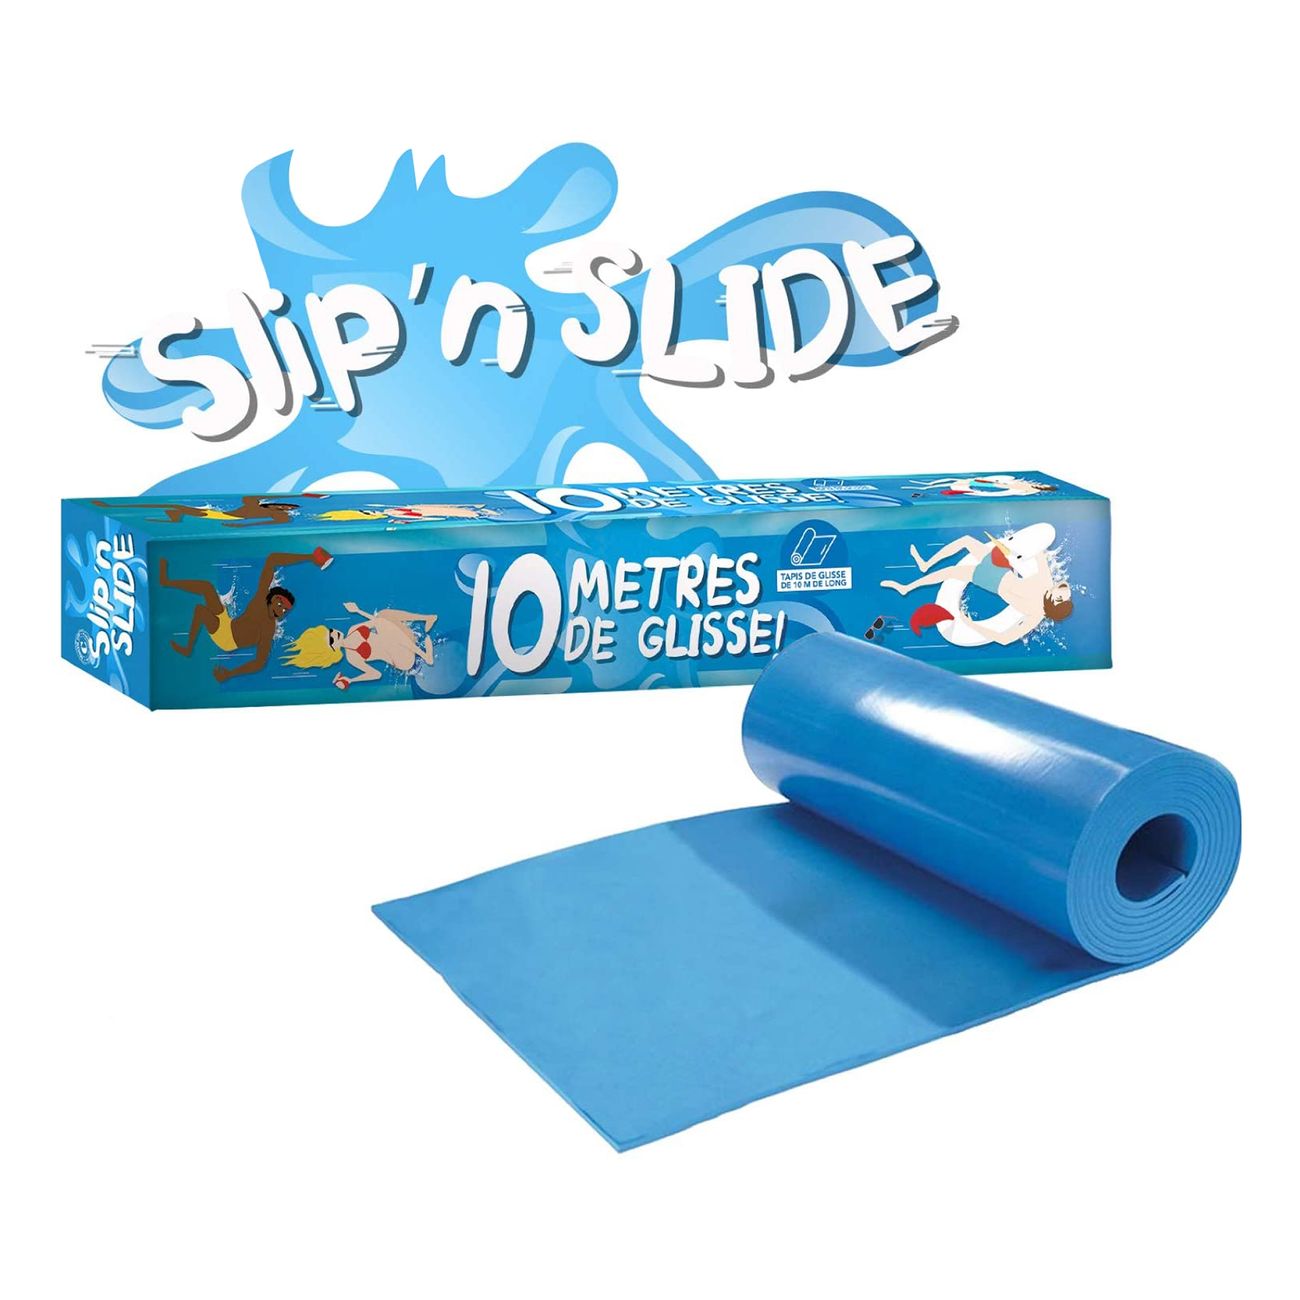 slipn-slide-vattenrutschmatta-74137-6